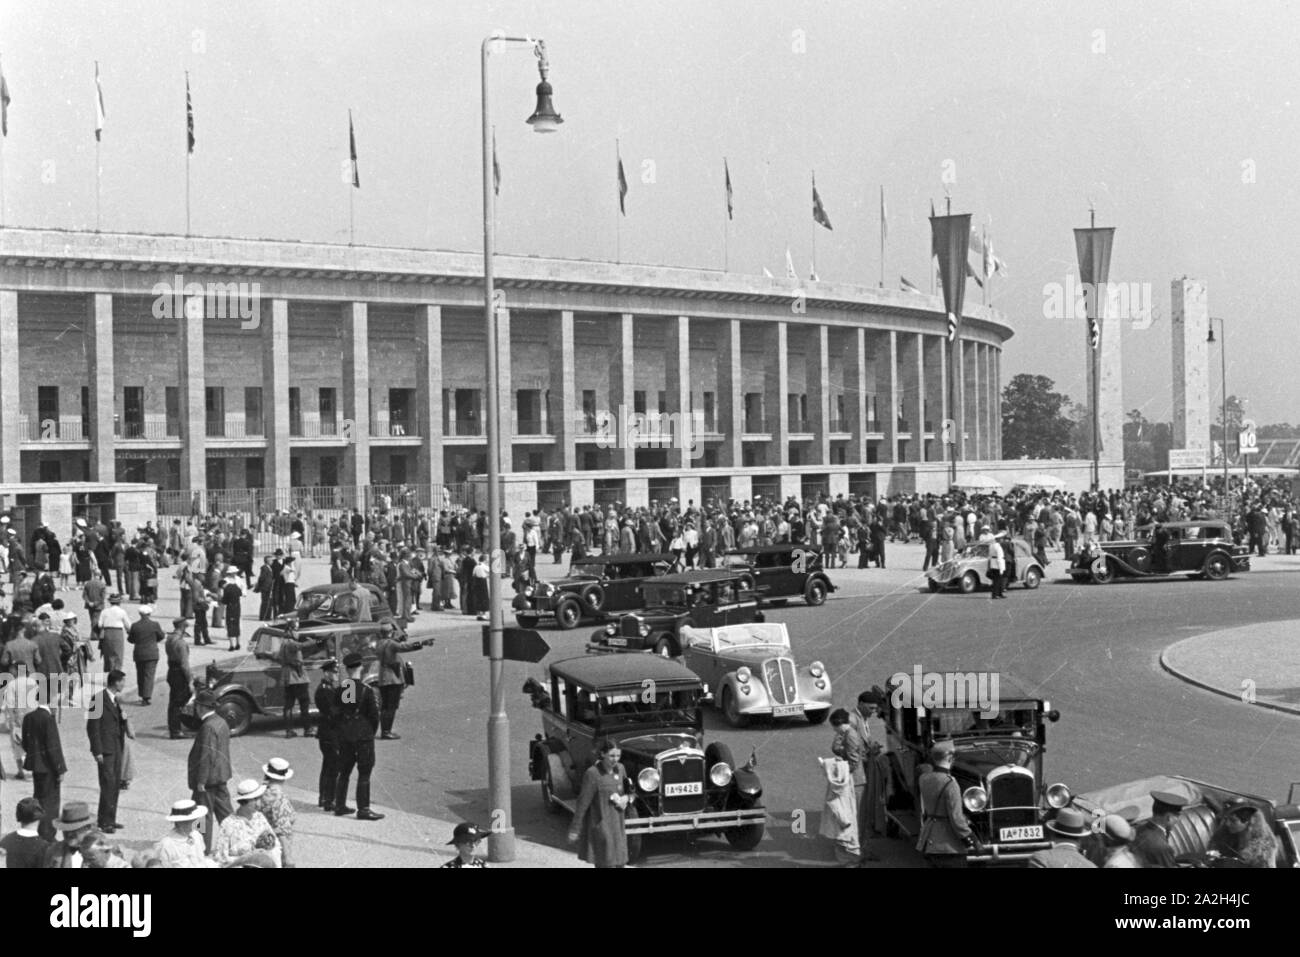 Un Menschenmenge Straße von Taxis mit vor dem Stadion à Berlin, Deutschland 1930er Jahre. Foule par une rue animée avec de nombreux taxis devant le stade olympique de Berlin, Allemagne 1930. Banque D'Images